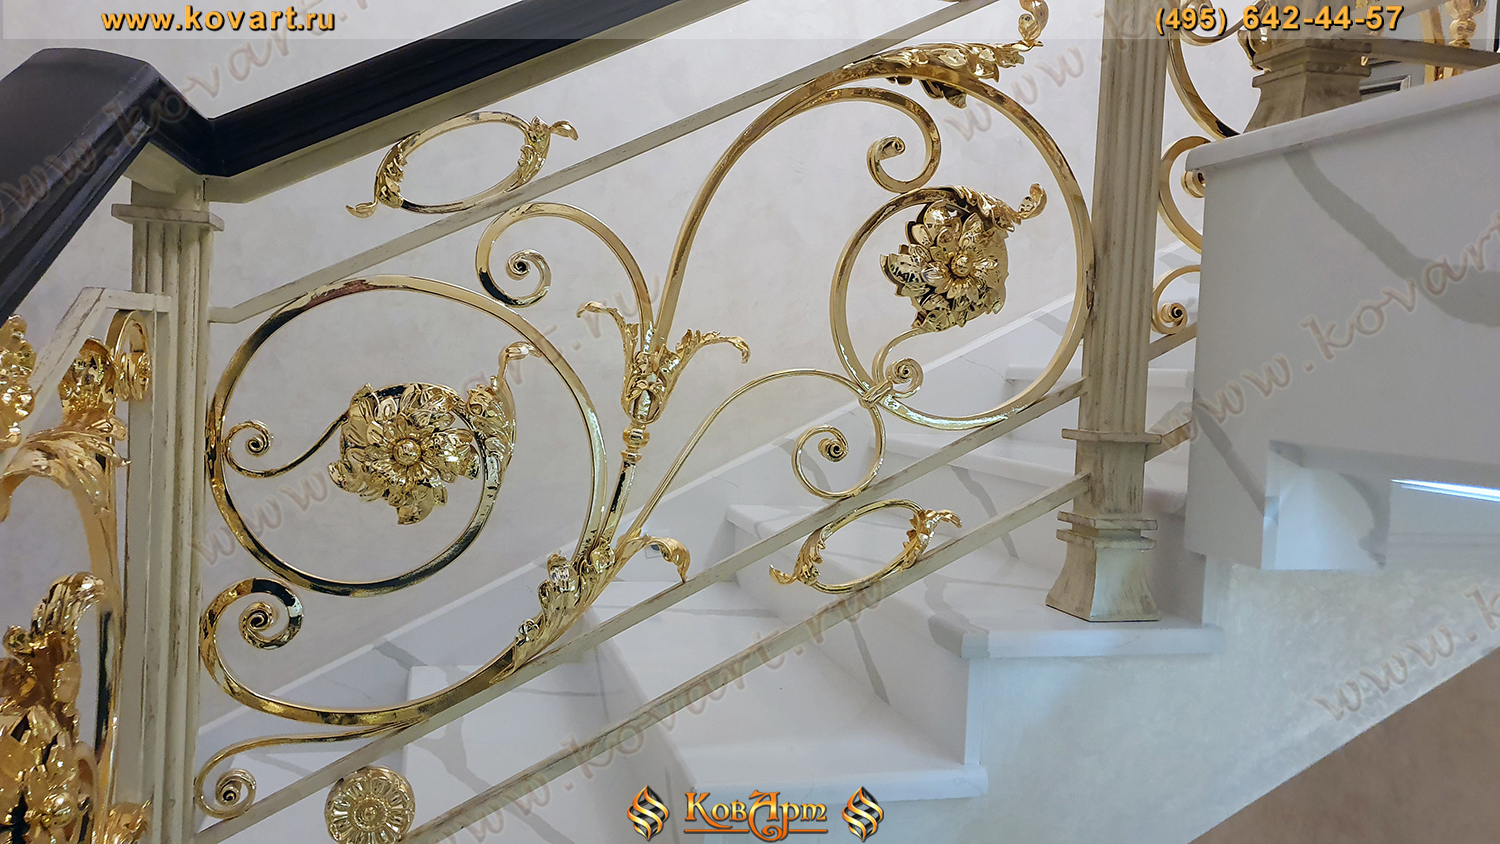 Мраморная лестница с кованым золотым узором на перилах Код: ЛП-021/81